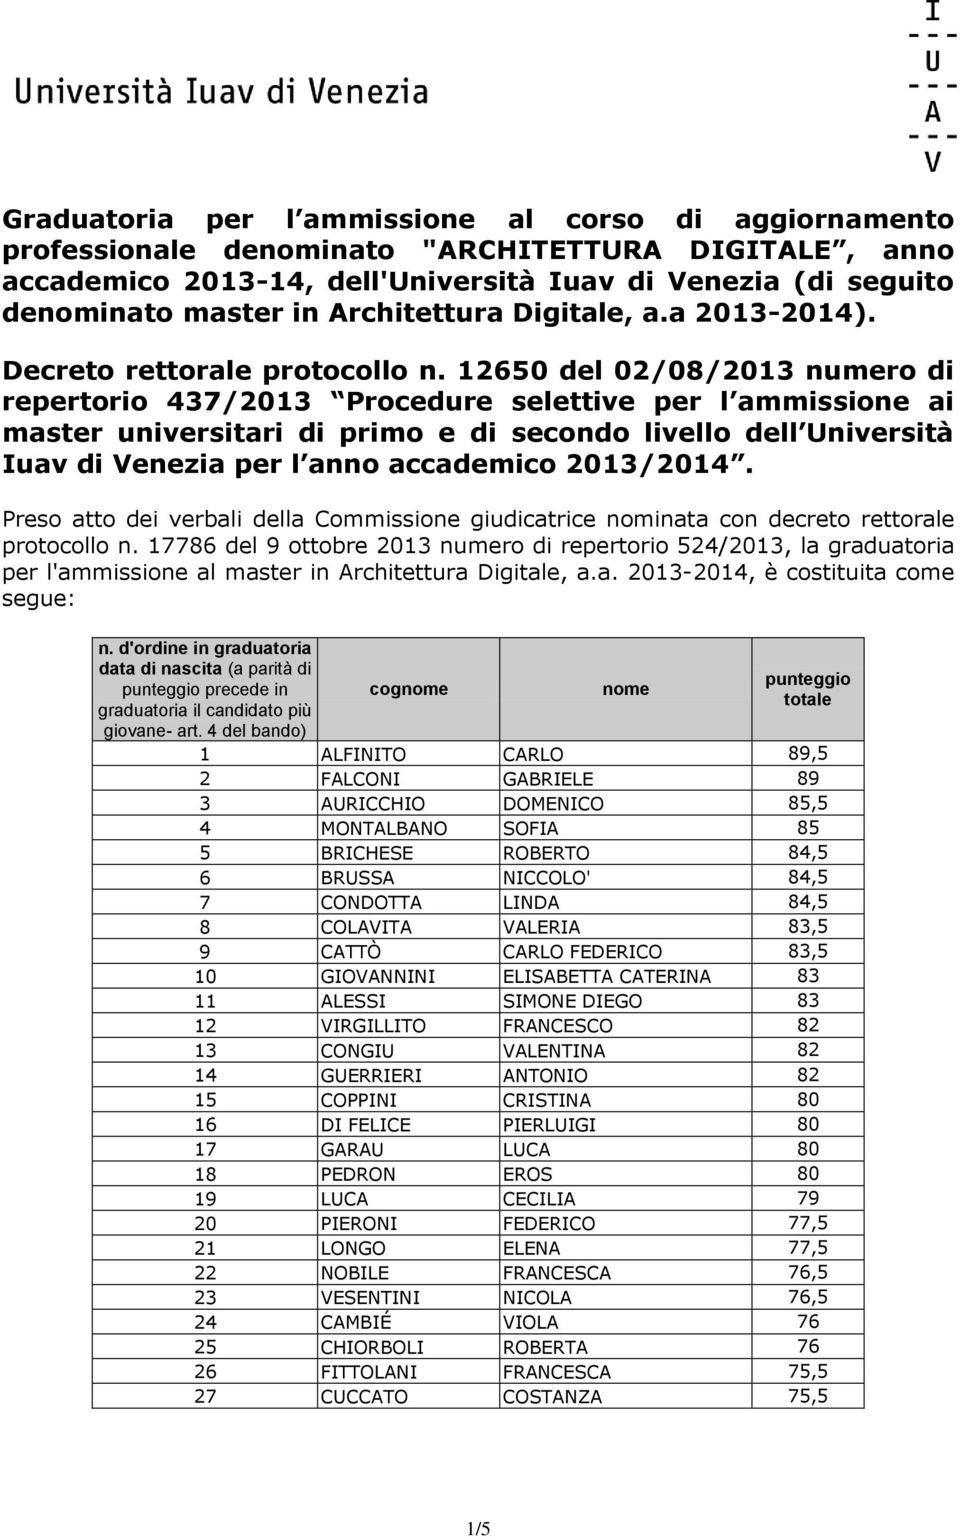 12650 del 02/08/2013 numero di repertorio 437/2013 Procedure selettive per l ammissione ai master universitari di primo e di secondo livello dell Università Iuav di Venezia per l anno accademico